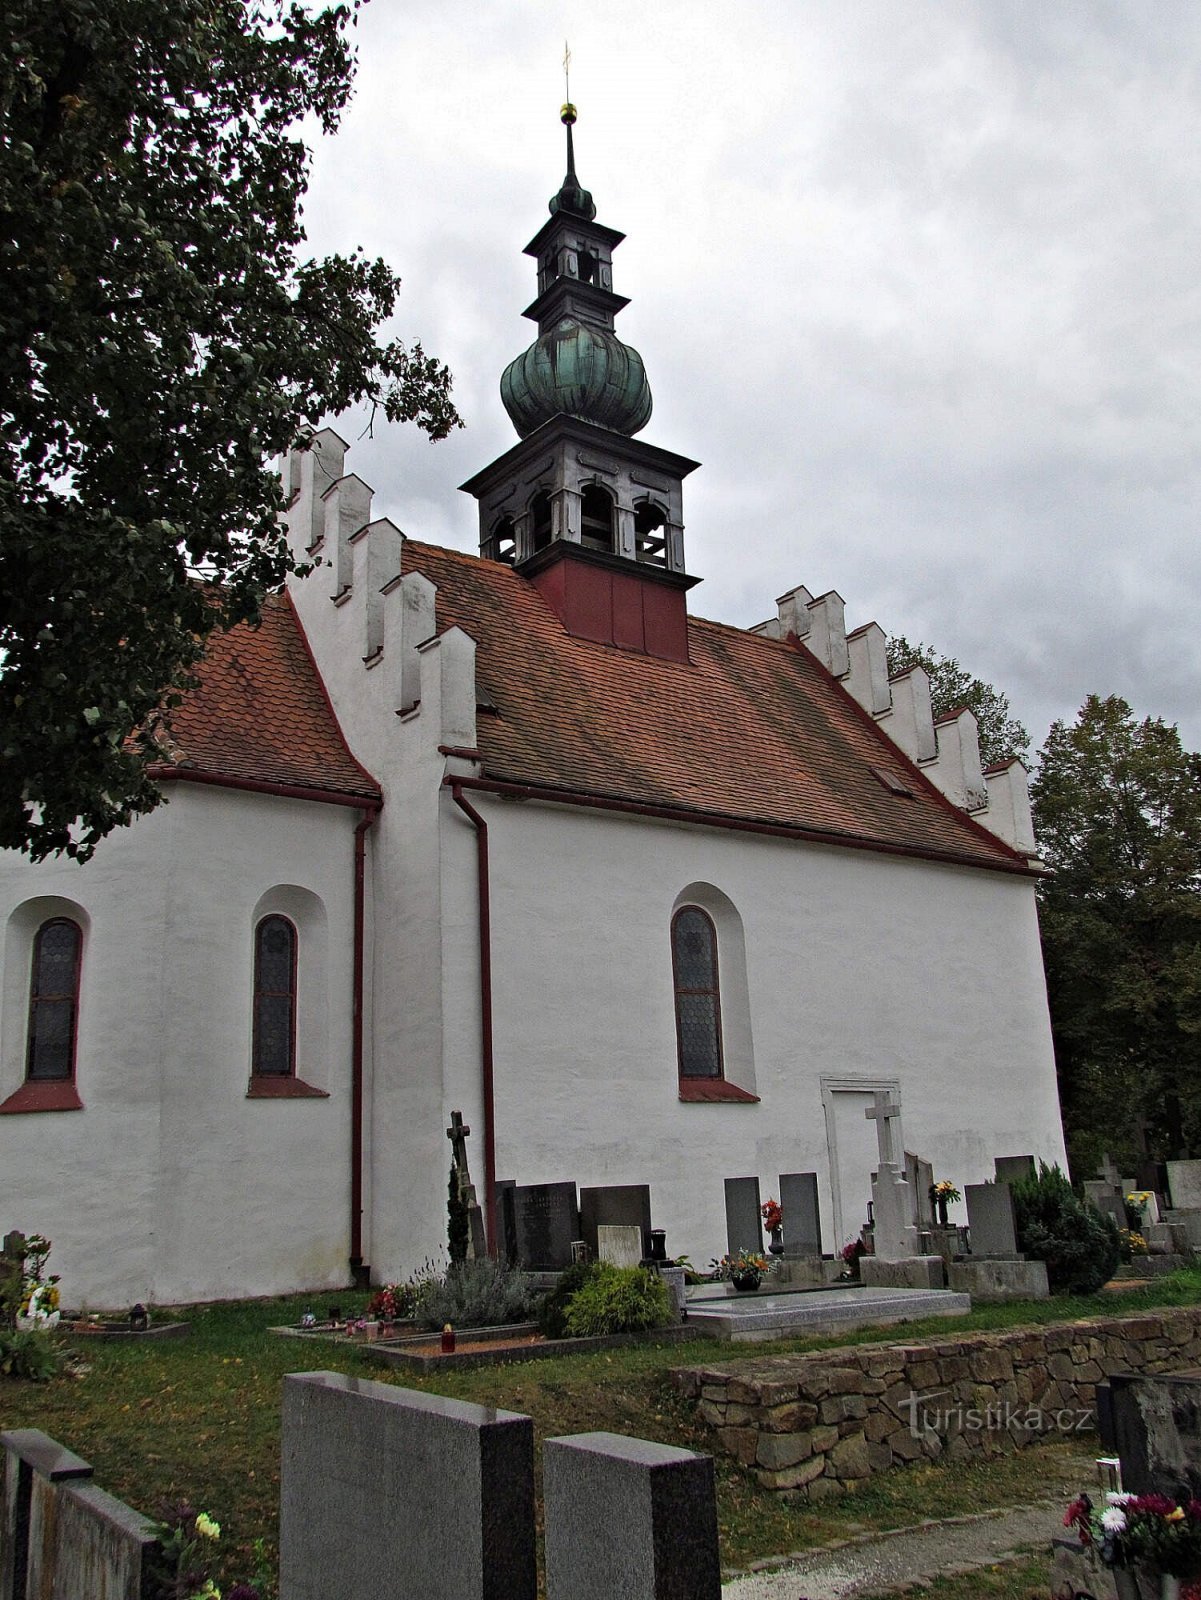 Pre-cloister - kirkegård kirke af den hellige treenighed